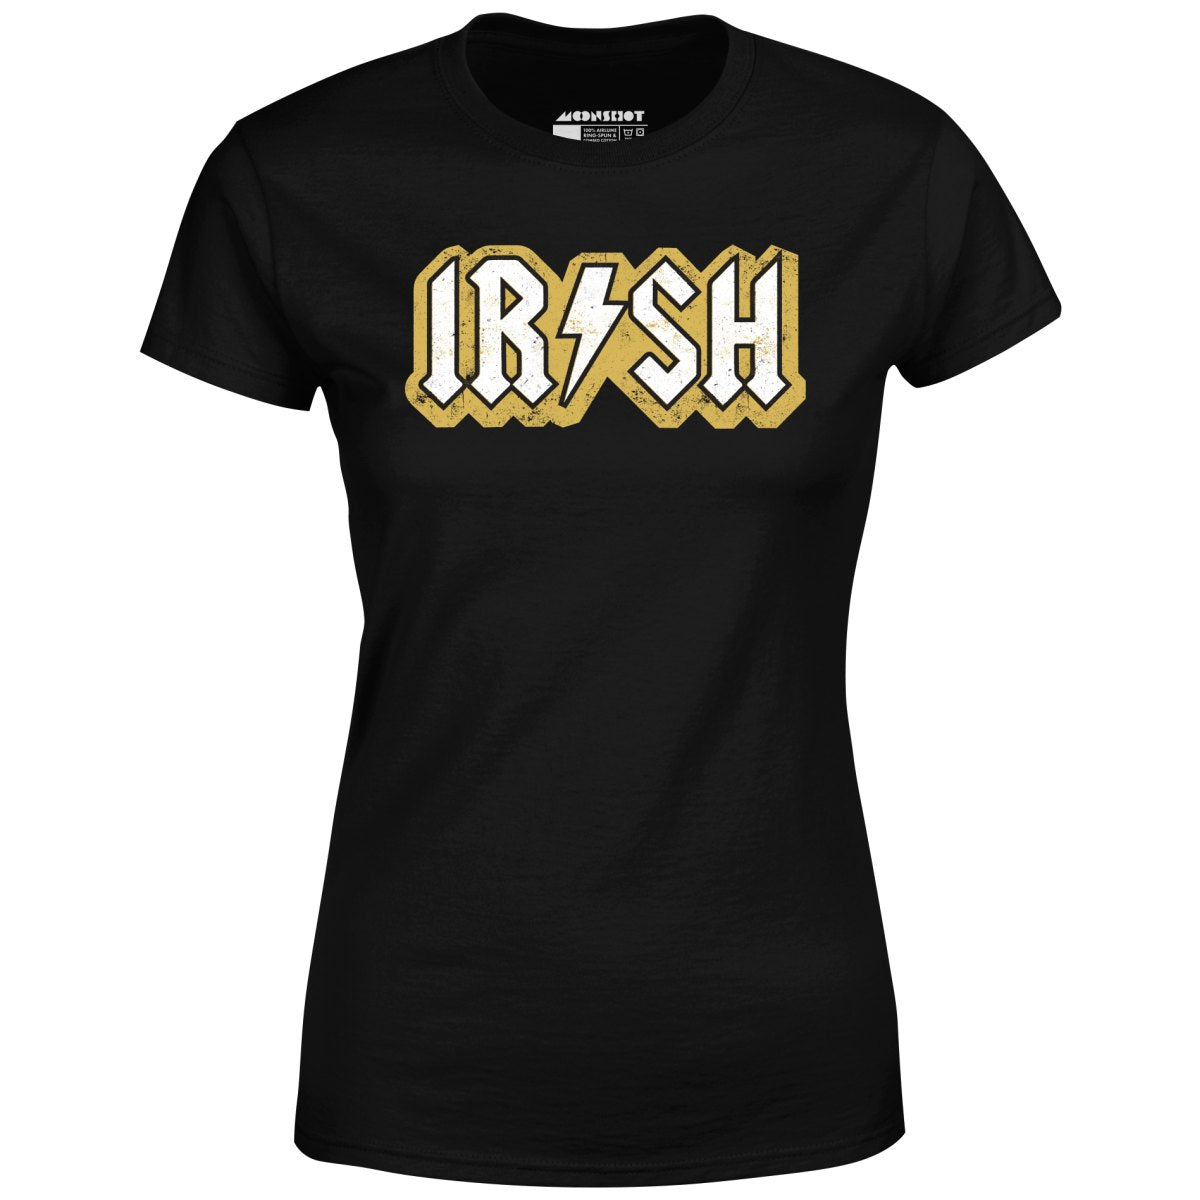 Irish - Women's T-Shirt